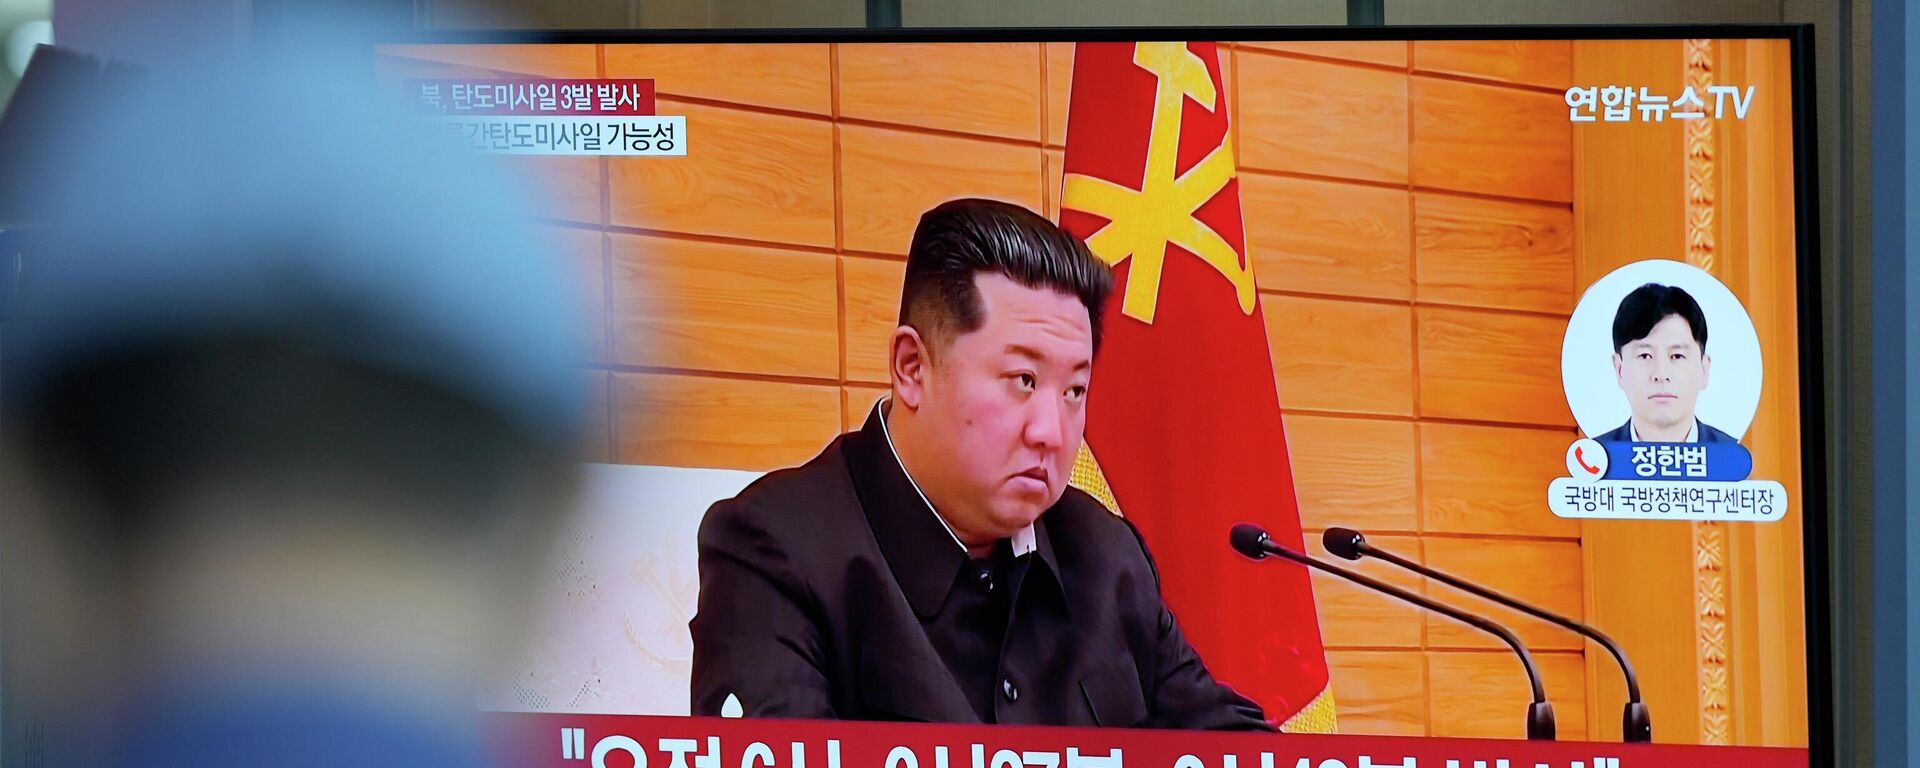 O líder norte-coreano, Kim Jong-un, aparece em uma tela em Seul, na Coreia do Sul, falando sobre o lançamento de um míssil pela Coreia do Norte, em 25 de maio de 2022 - Sputnik Brasil, 1920, 10.07.2022